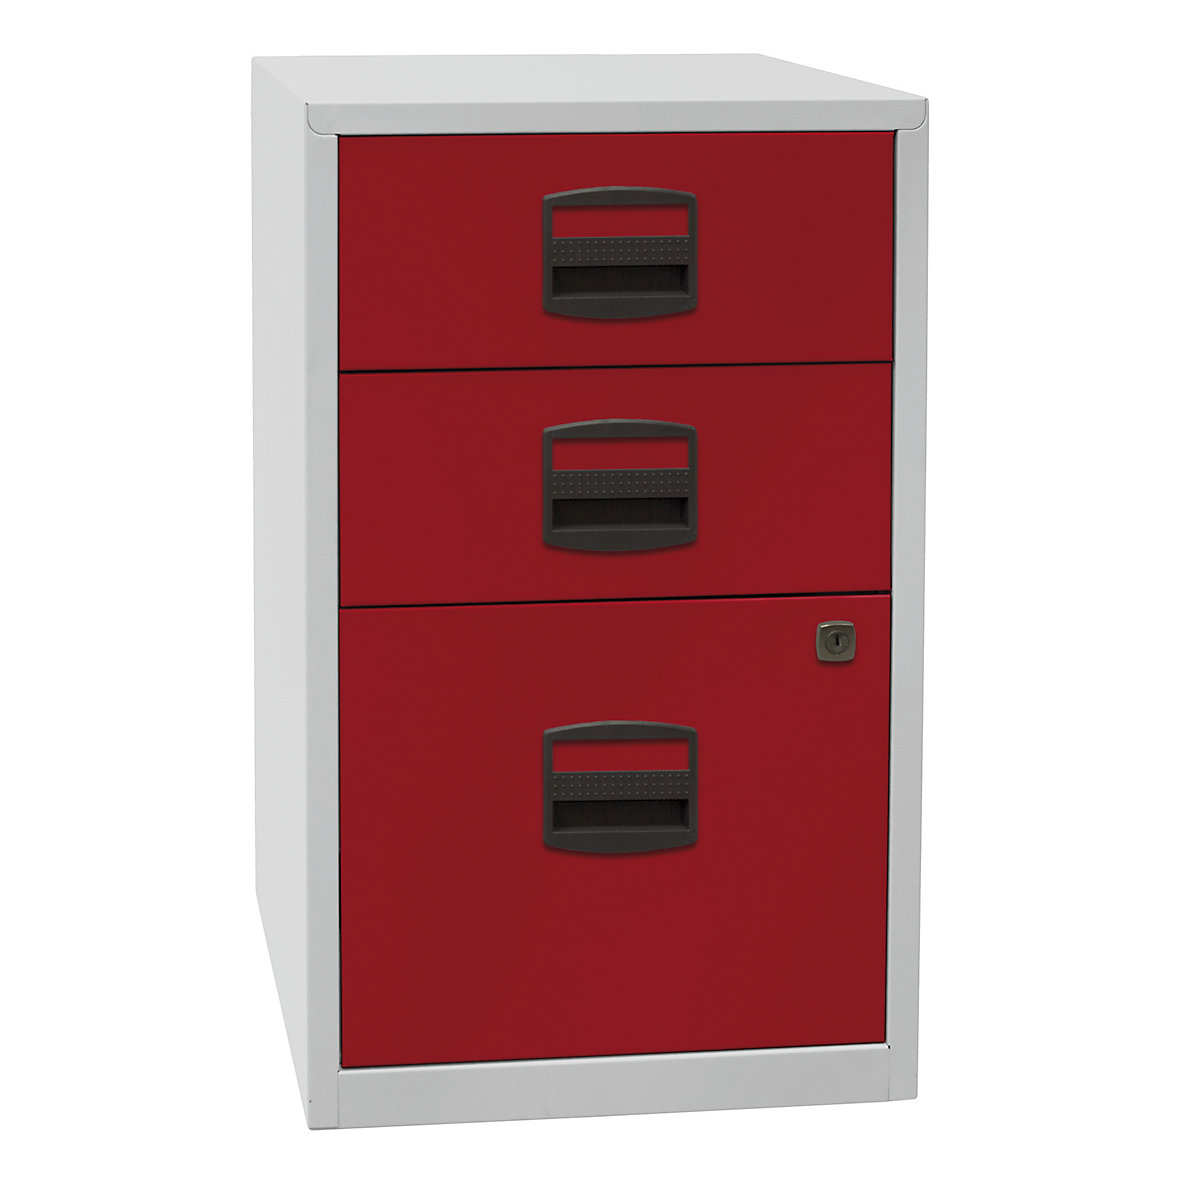 Mobiletto PFA – BISLEY, 2 cassetti, 1 supporto per cartelle sospese, grigio chiaro / rosso cardinale-6